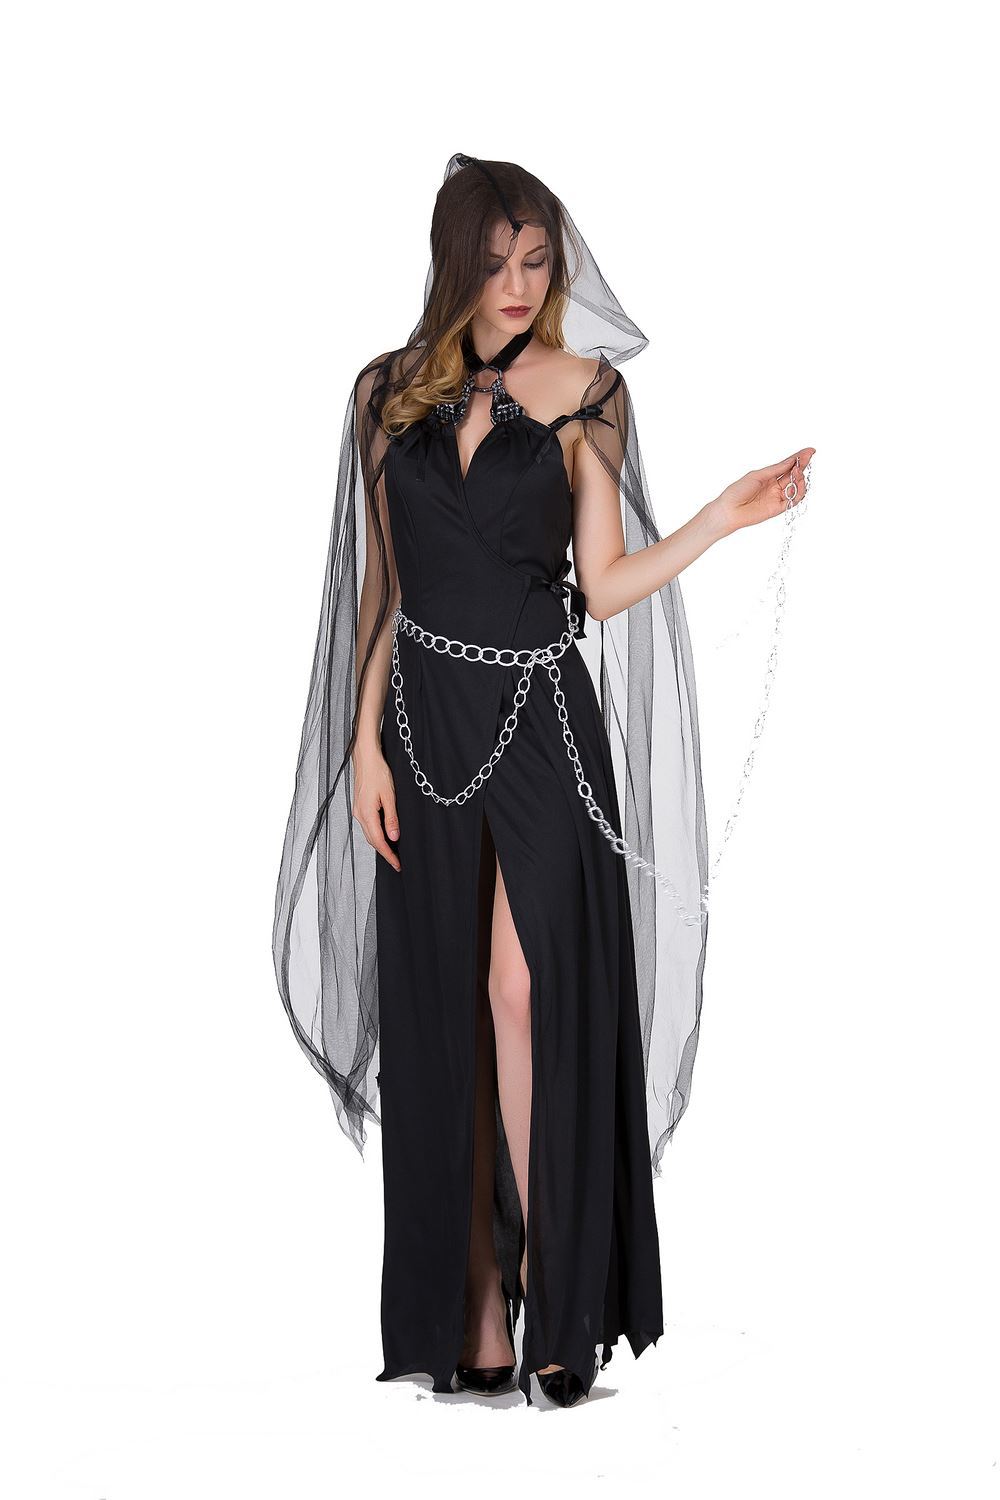 Sexy Grim Reaper Costume